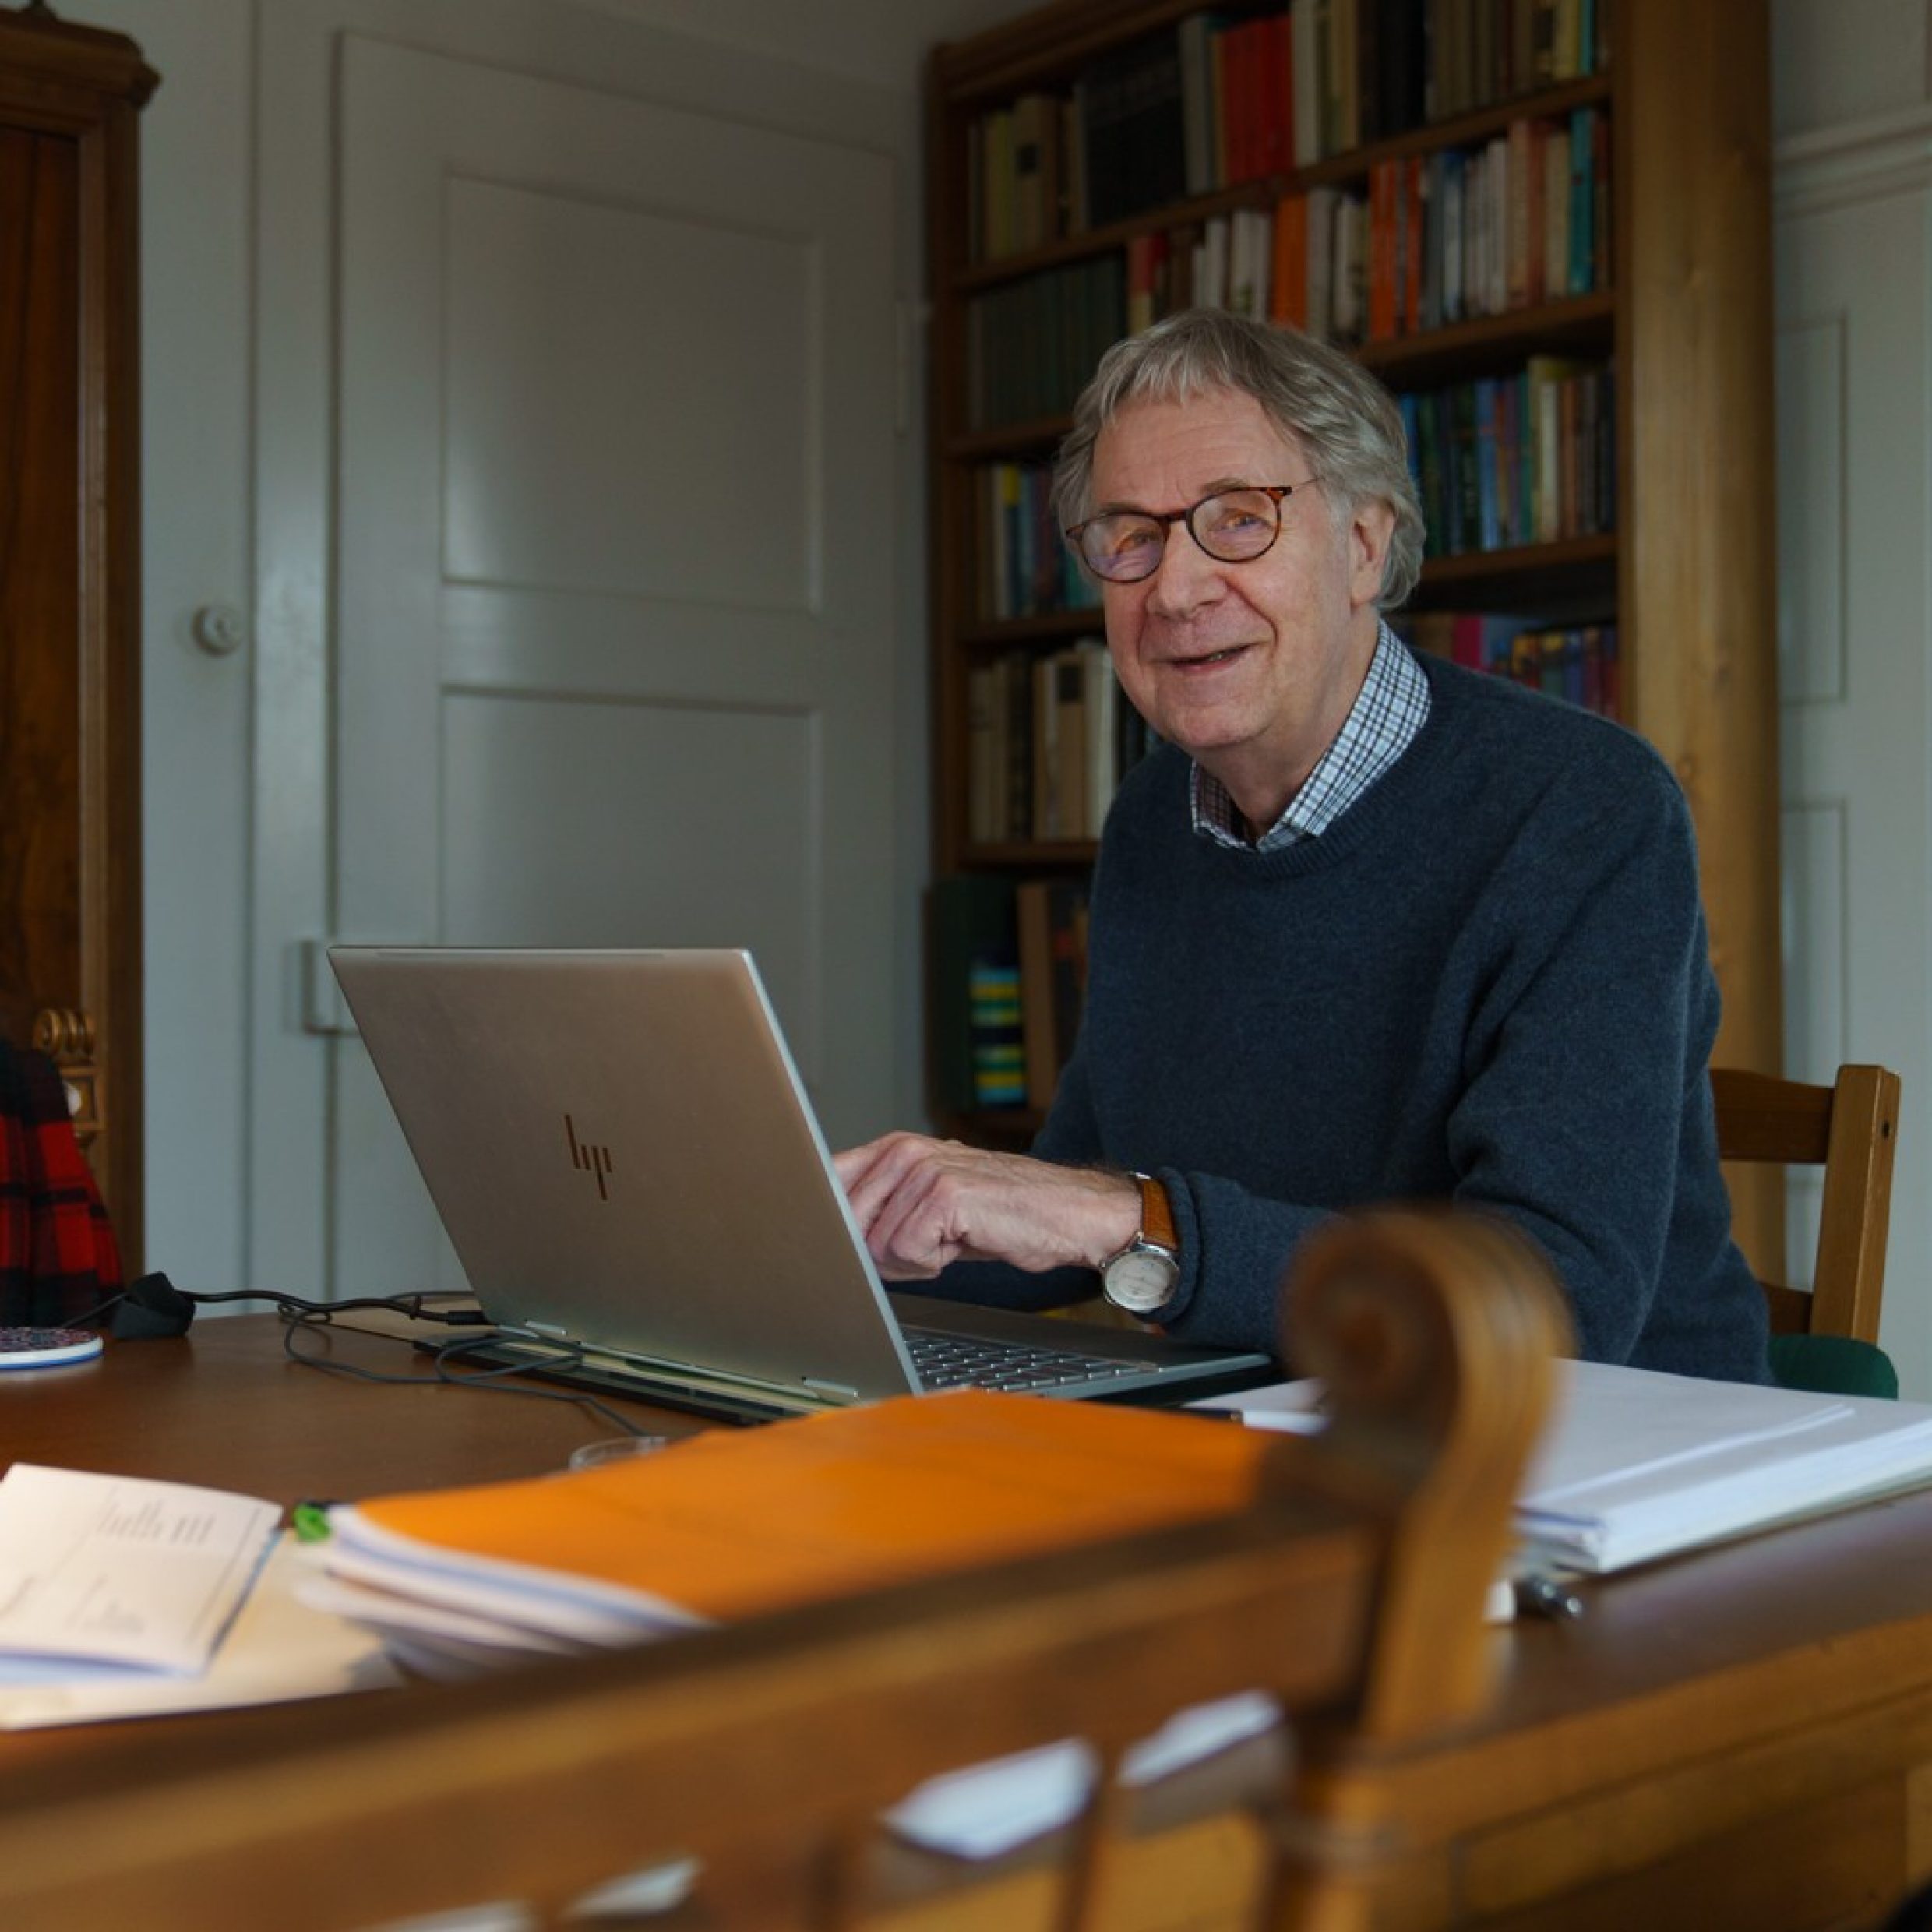 Ein älterer Mann sitzt an einem Tisch vor einem Laptop und zeigt etwas auf dem Bildschirm. Er lächelt dabei in die Kamera. Der Mann hat graue Haare und trägt eine Brille und einen blauen Pullover. 